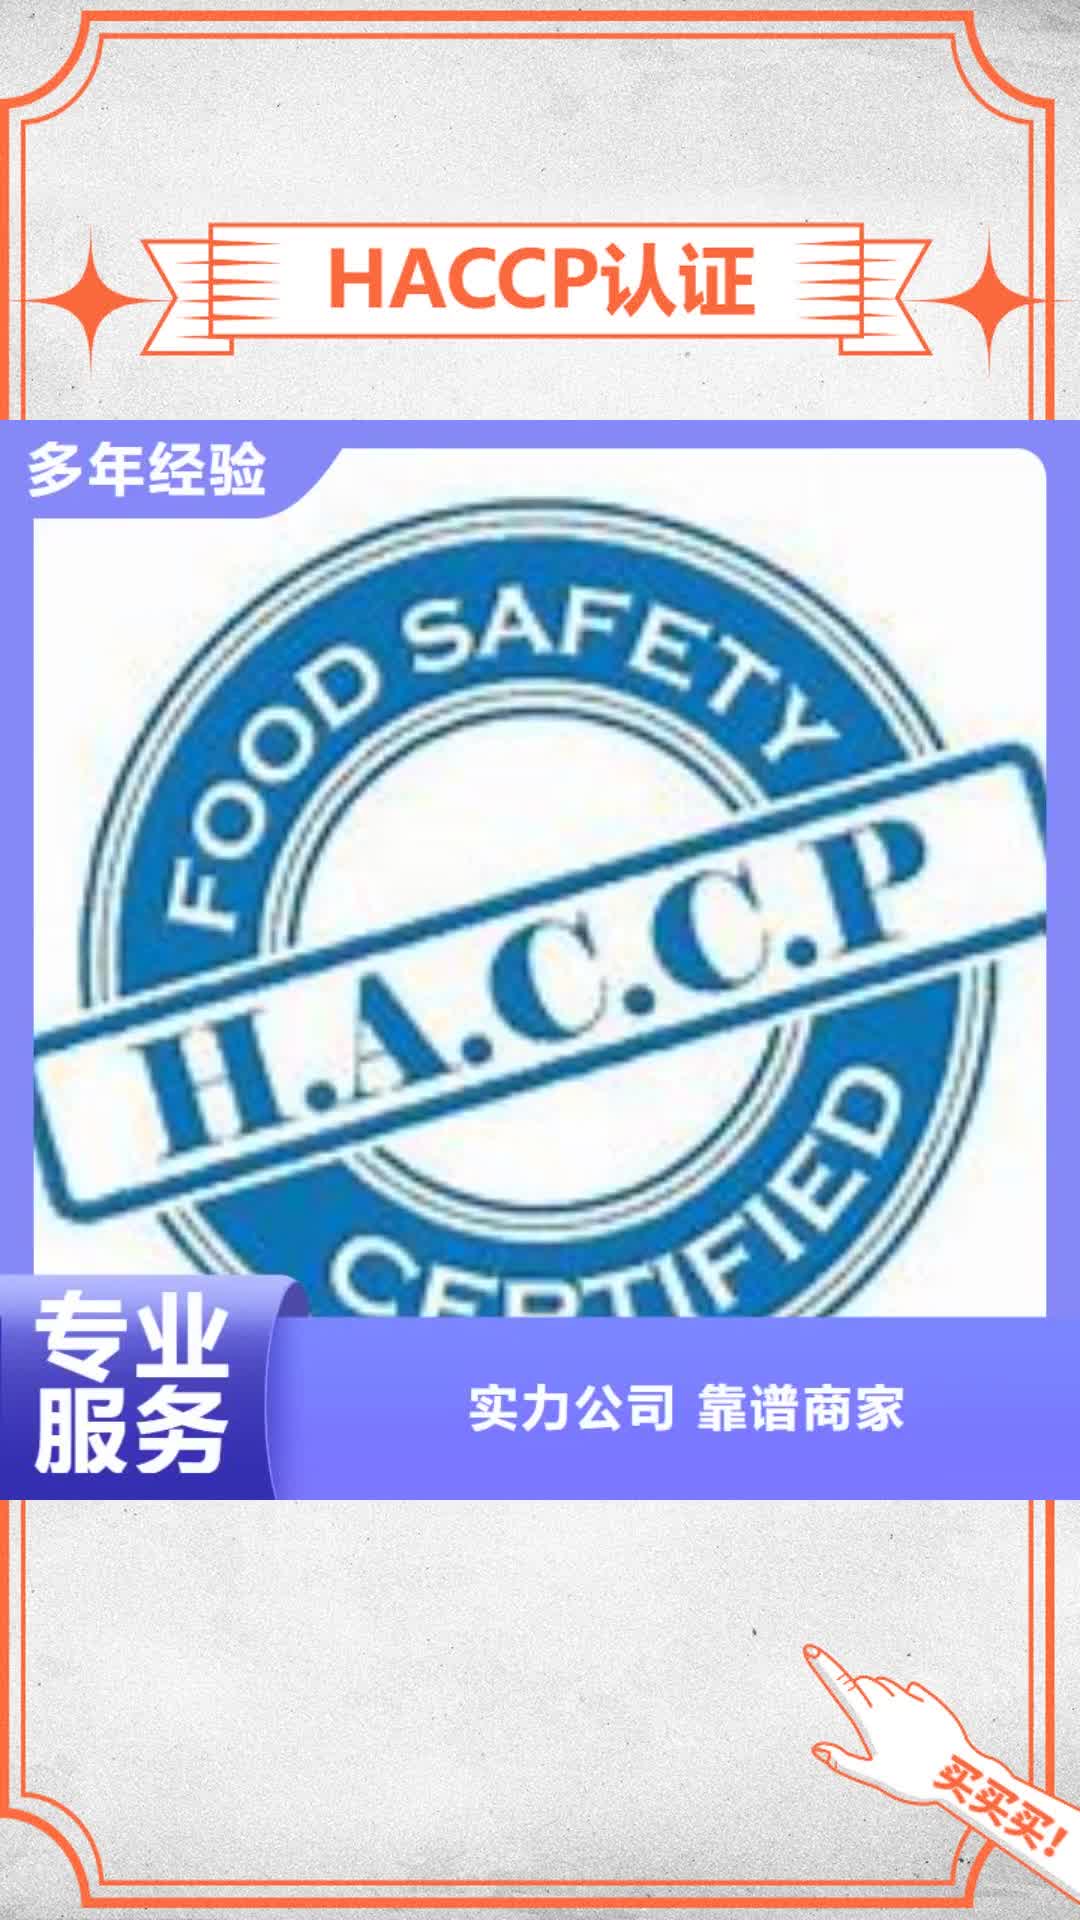 【云浮 HACCP认证,ISO10012认证实力团队】